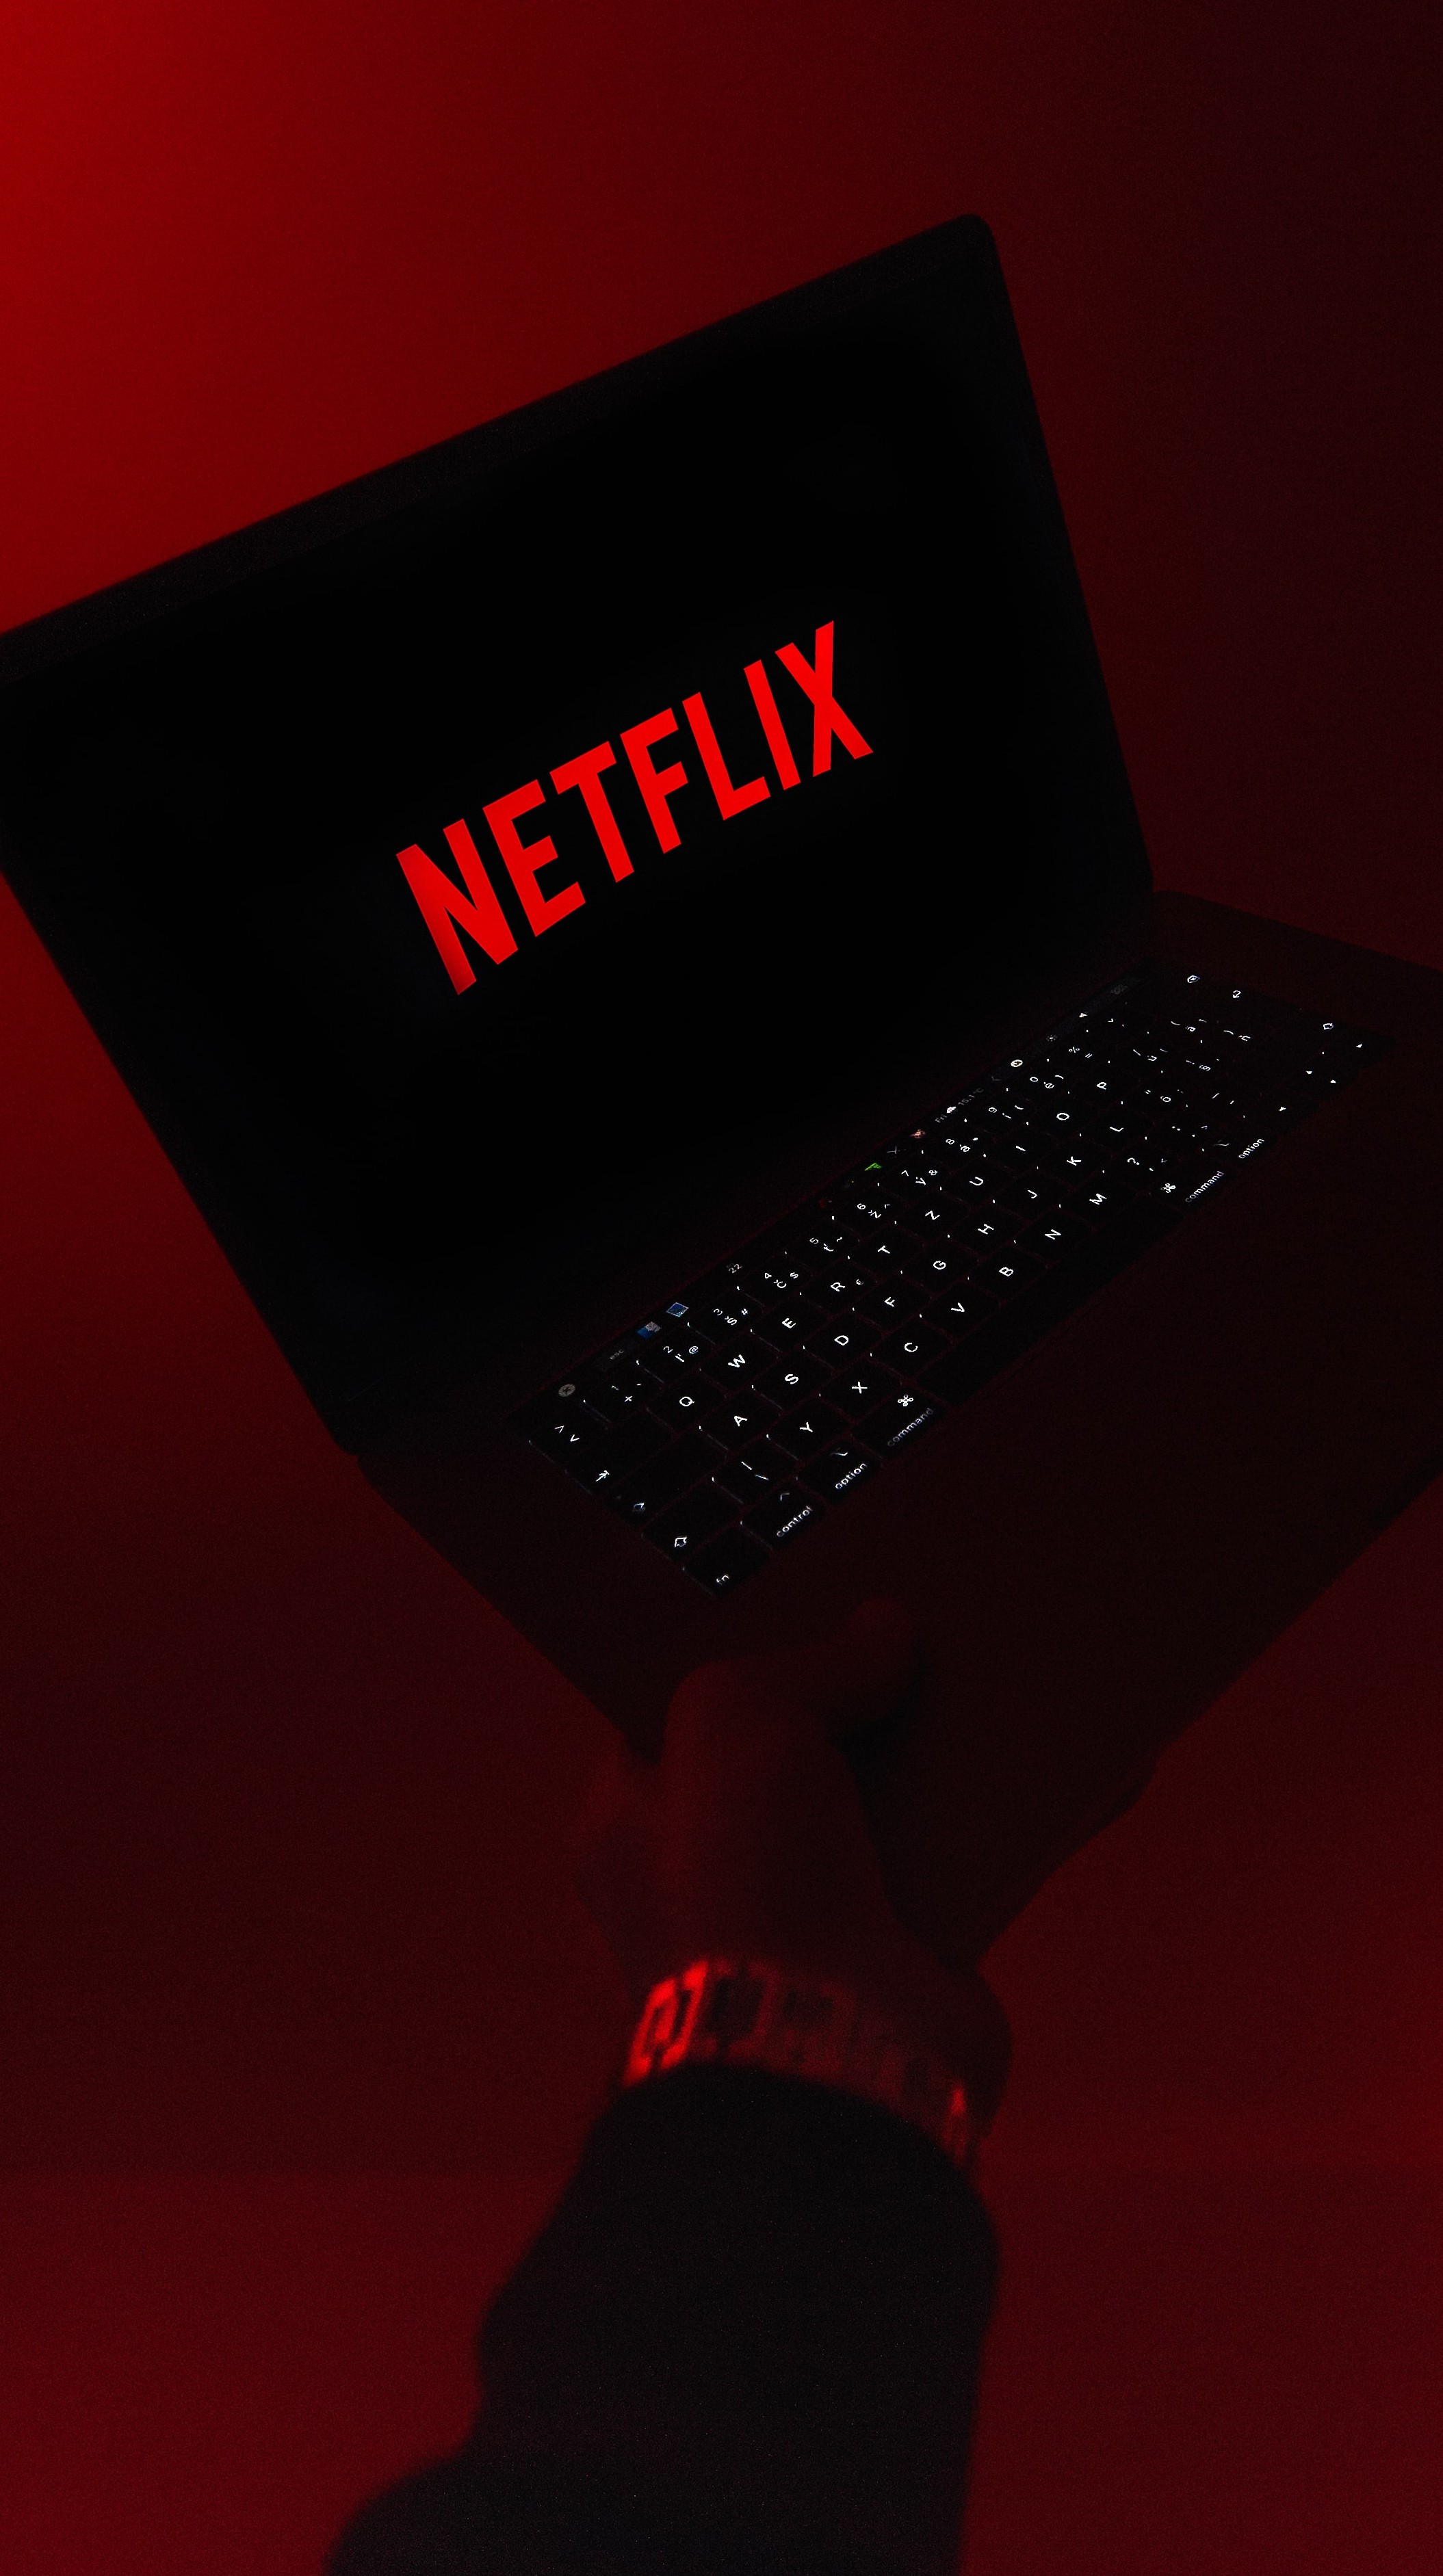 Desbloqueie a Netflix: Conheça os códigos para acessar os gêneros secretos  do streaming – O Presente